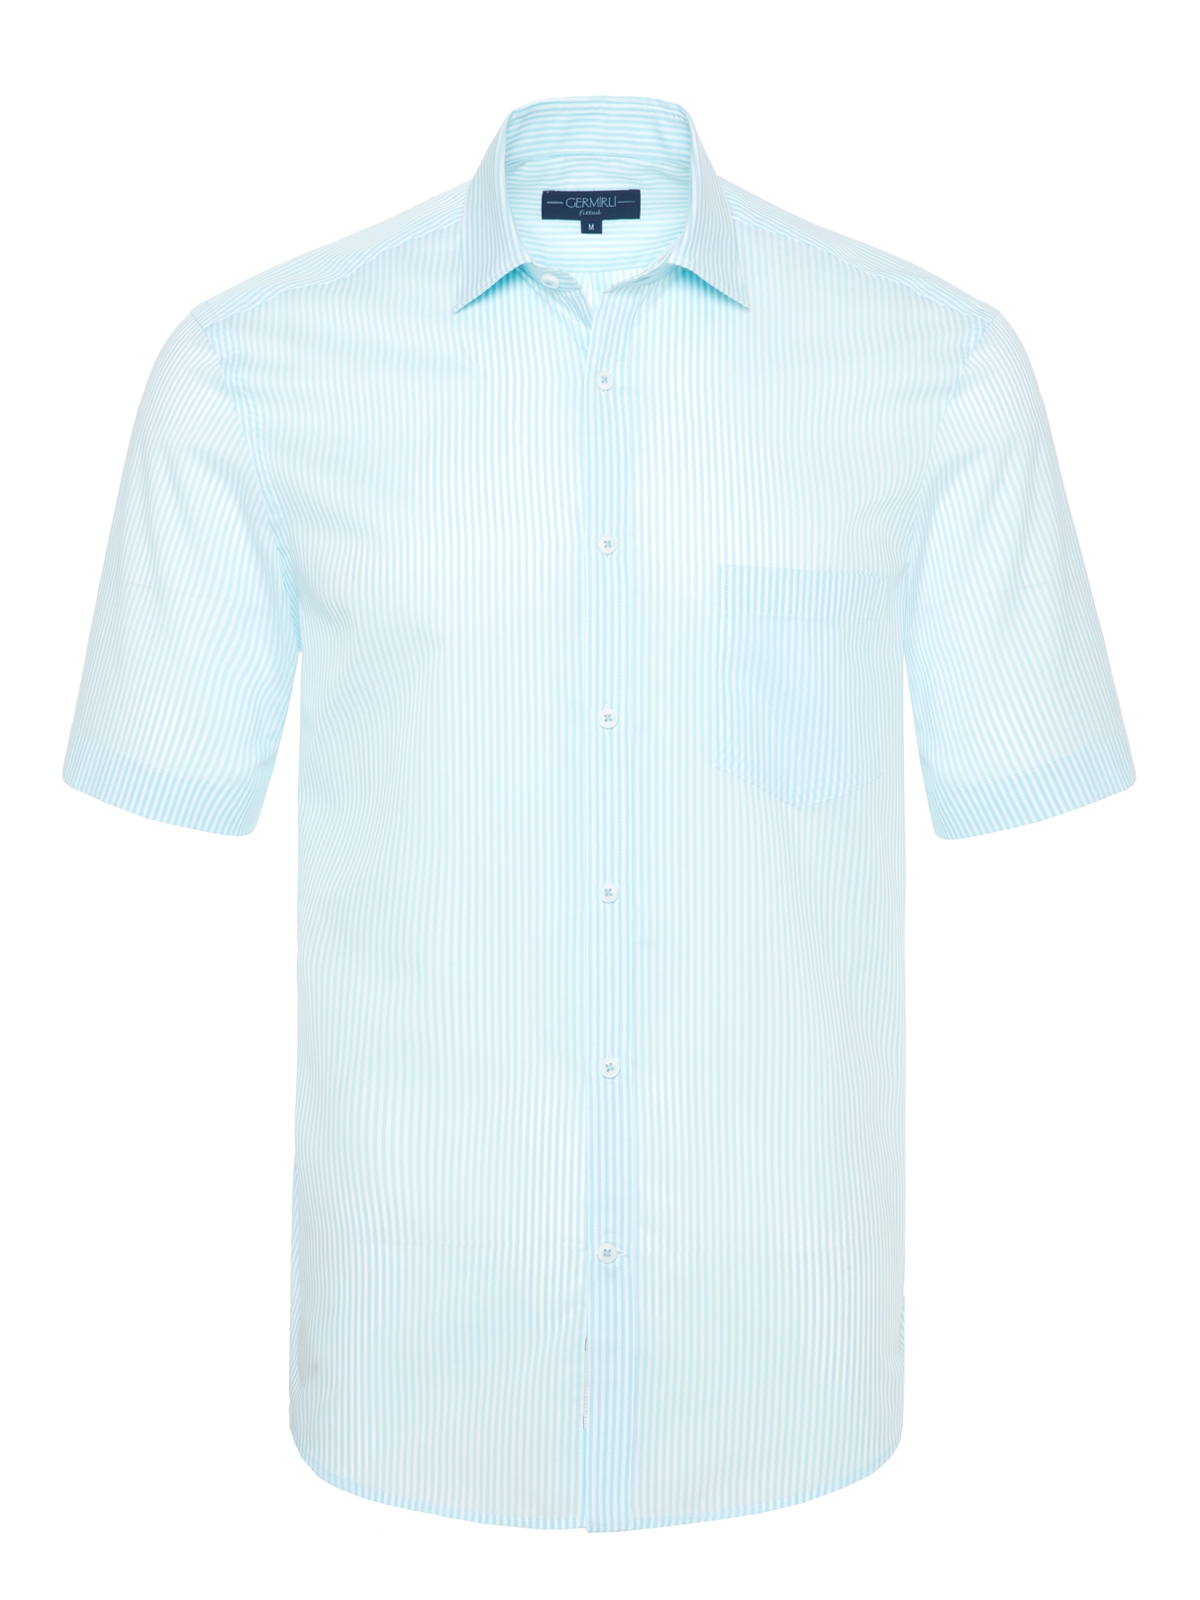 Germirli - Germirli Turkuaz Beyaz Çizgili Kısa Kollu Klasik Yaka Cepli Tailor Fit Gömlek